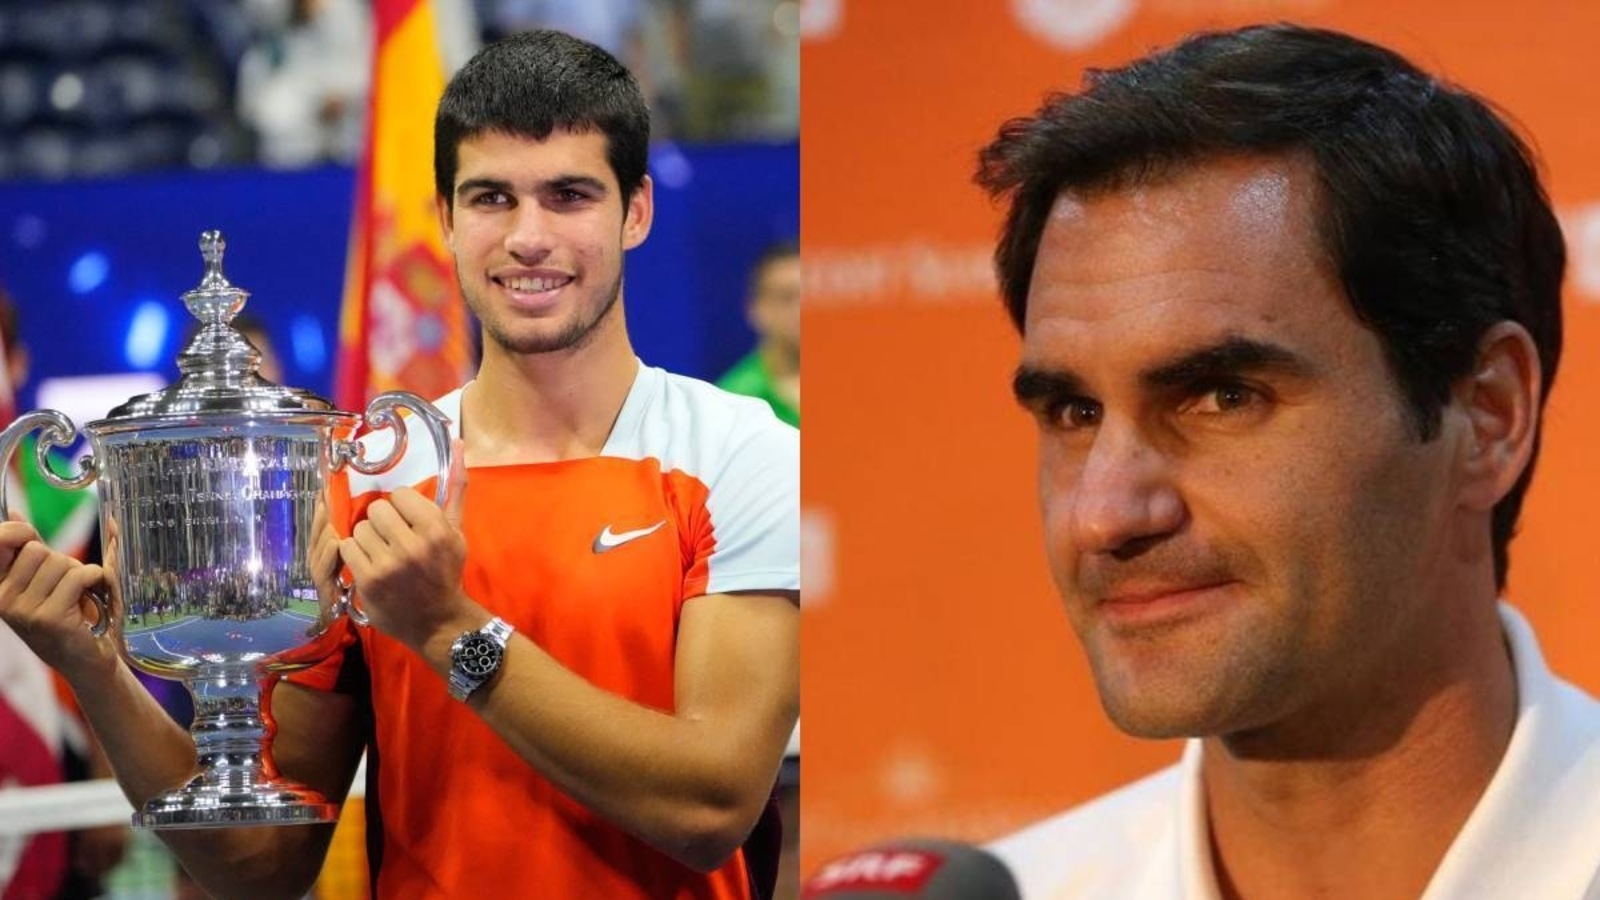 Federer gir en uvurderlig beskjed til Alcaraz om sin historiske tittel i US Open |  Tennis nyheter